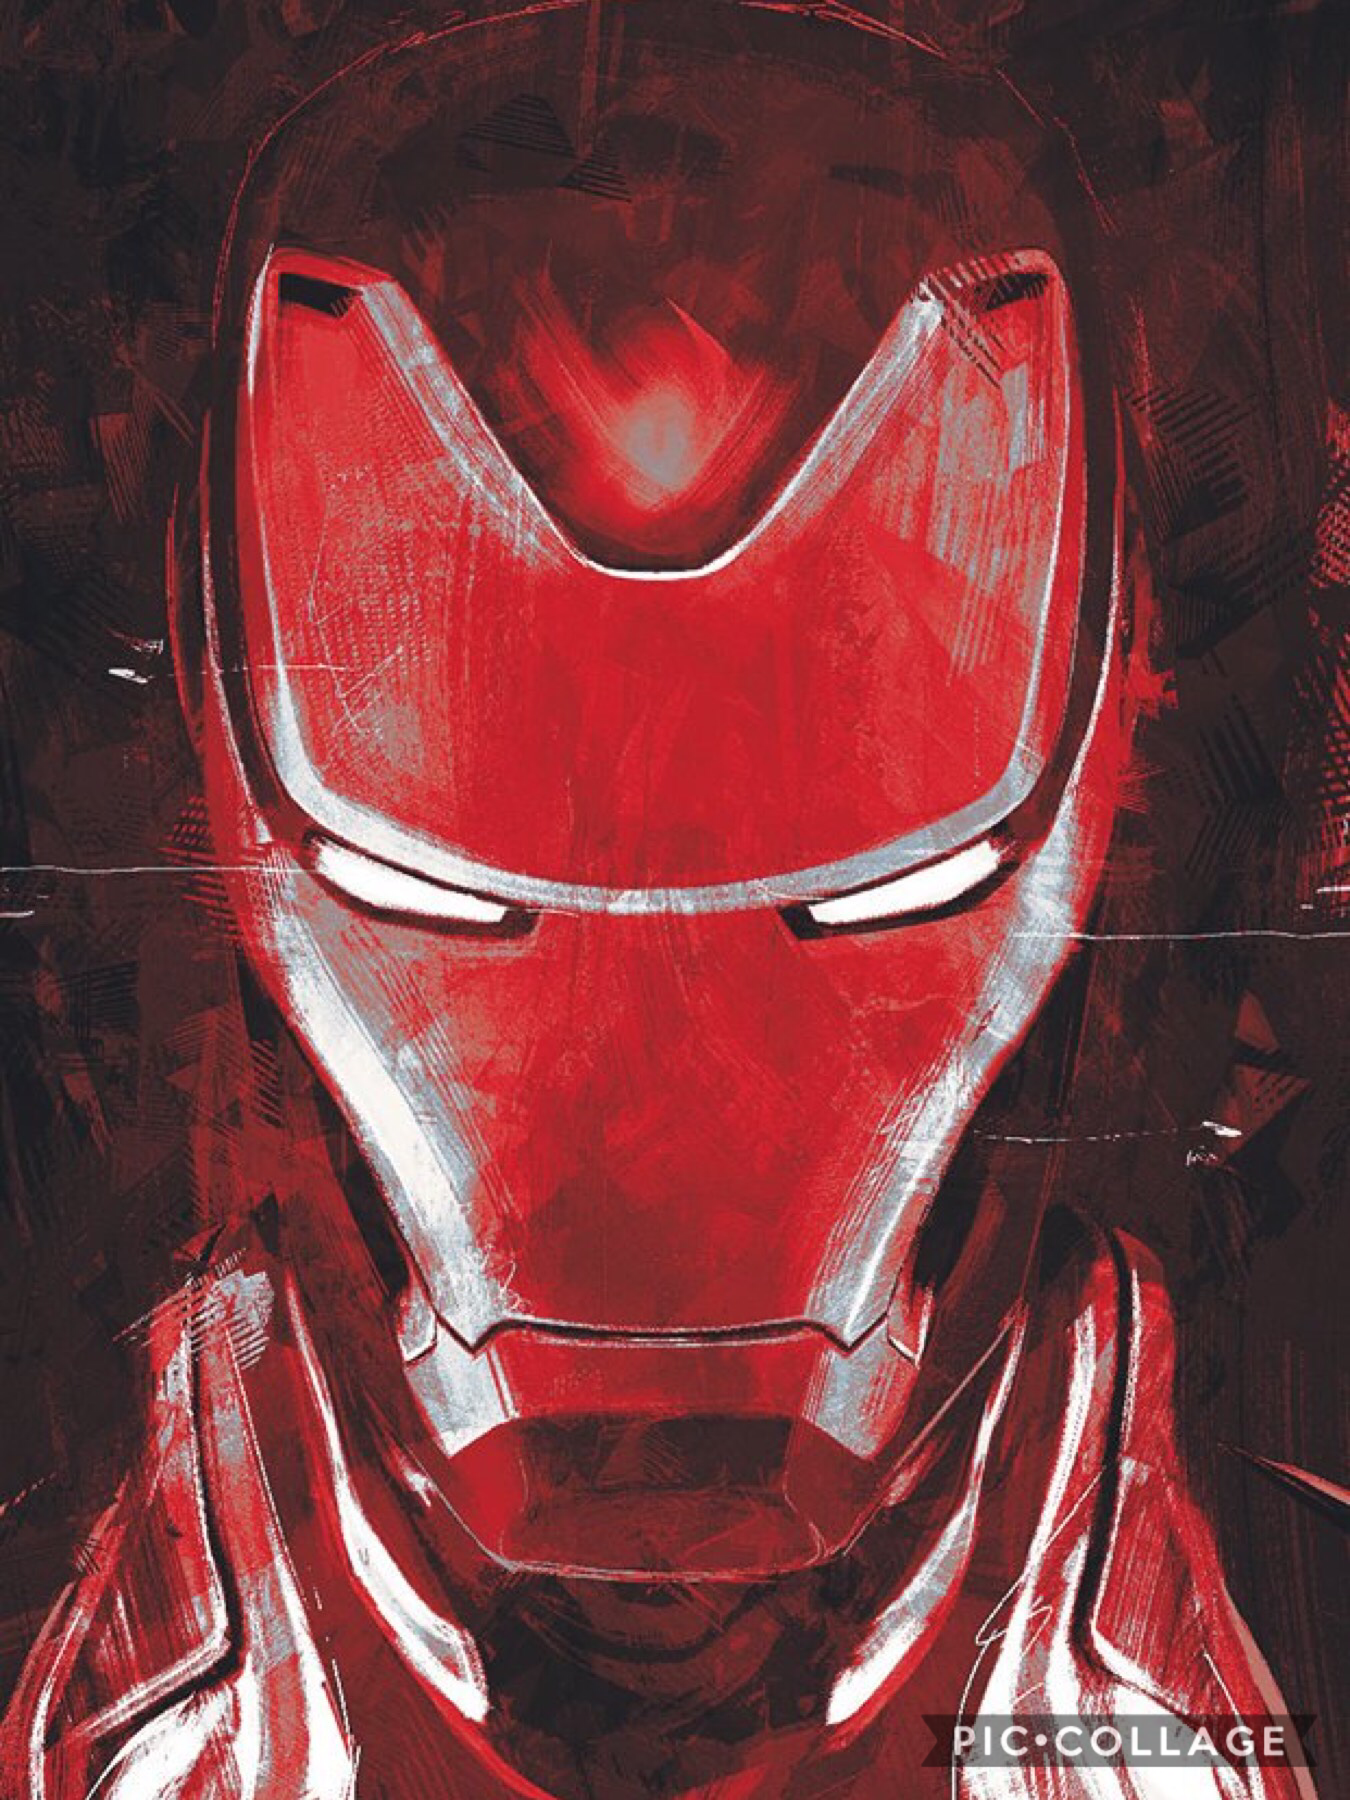 @Avengers #EndGame #IronMan in 2019 by Marvel Studios